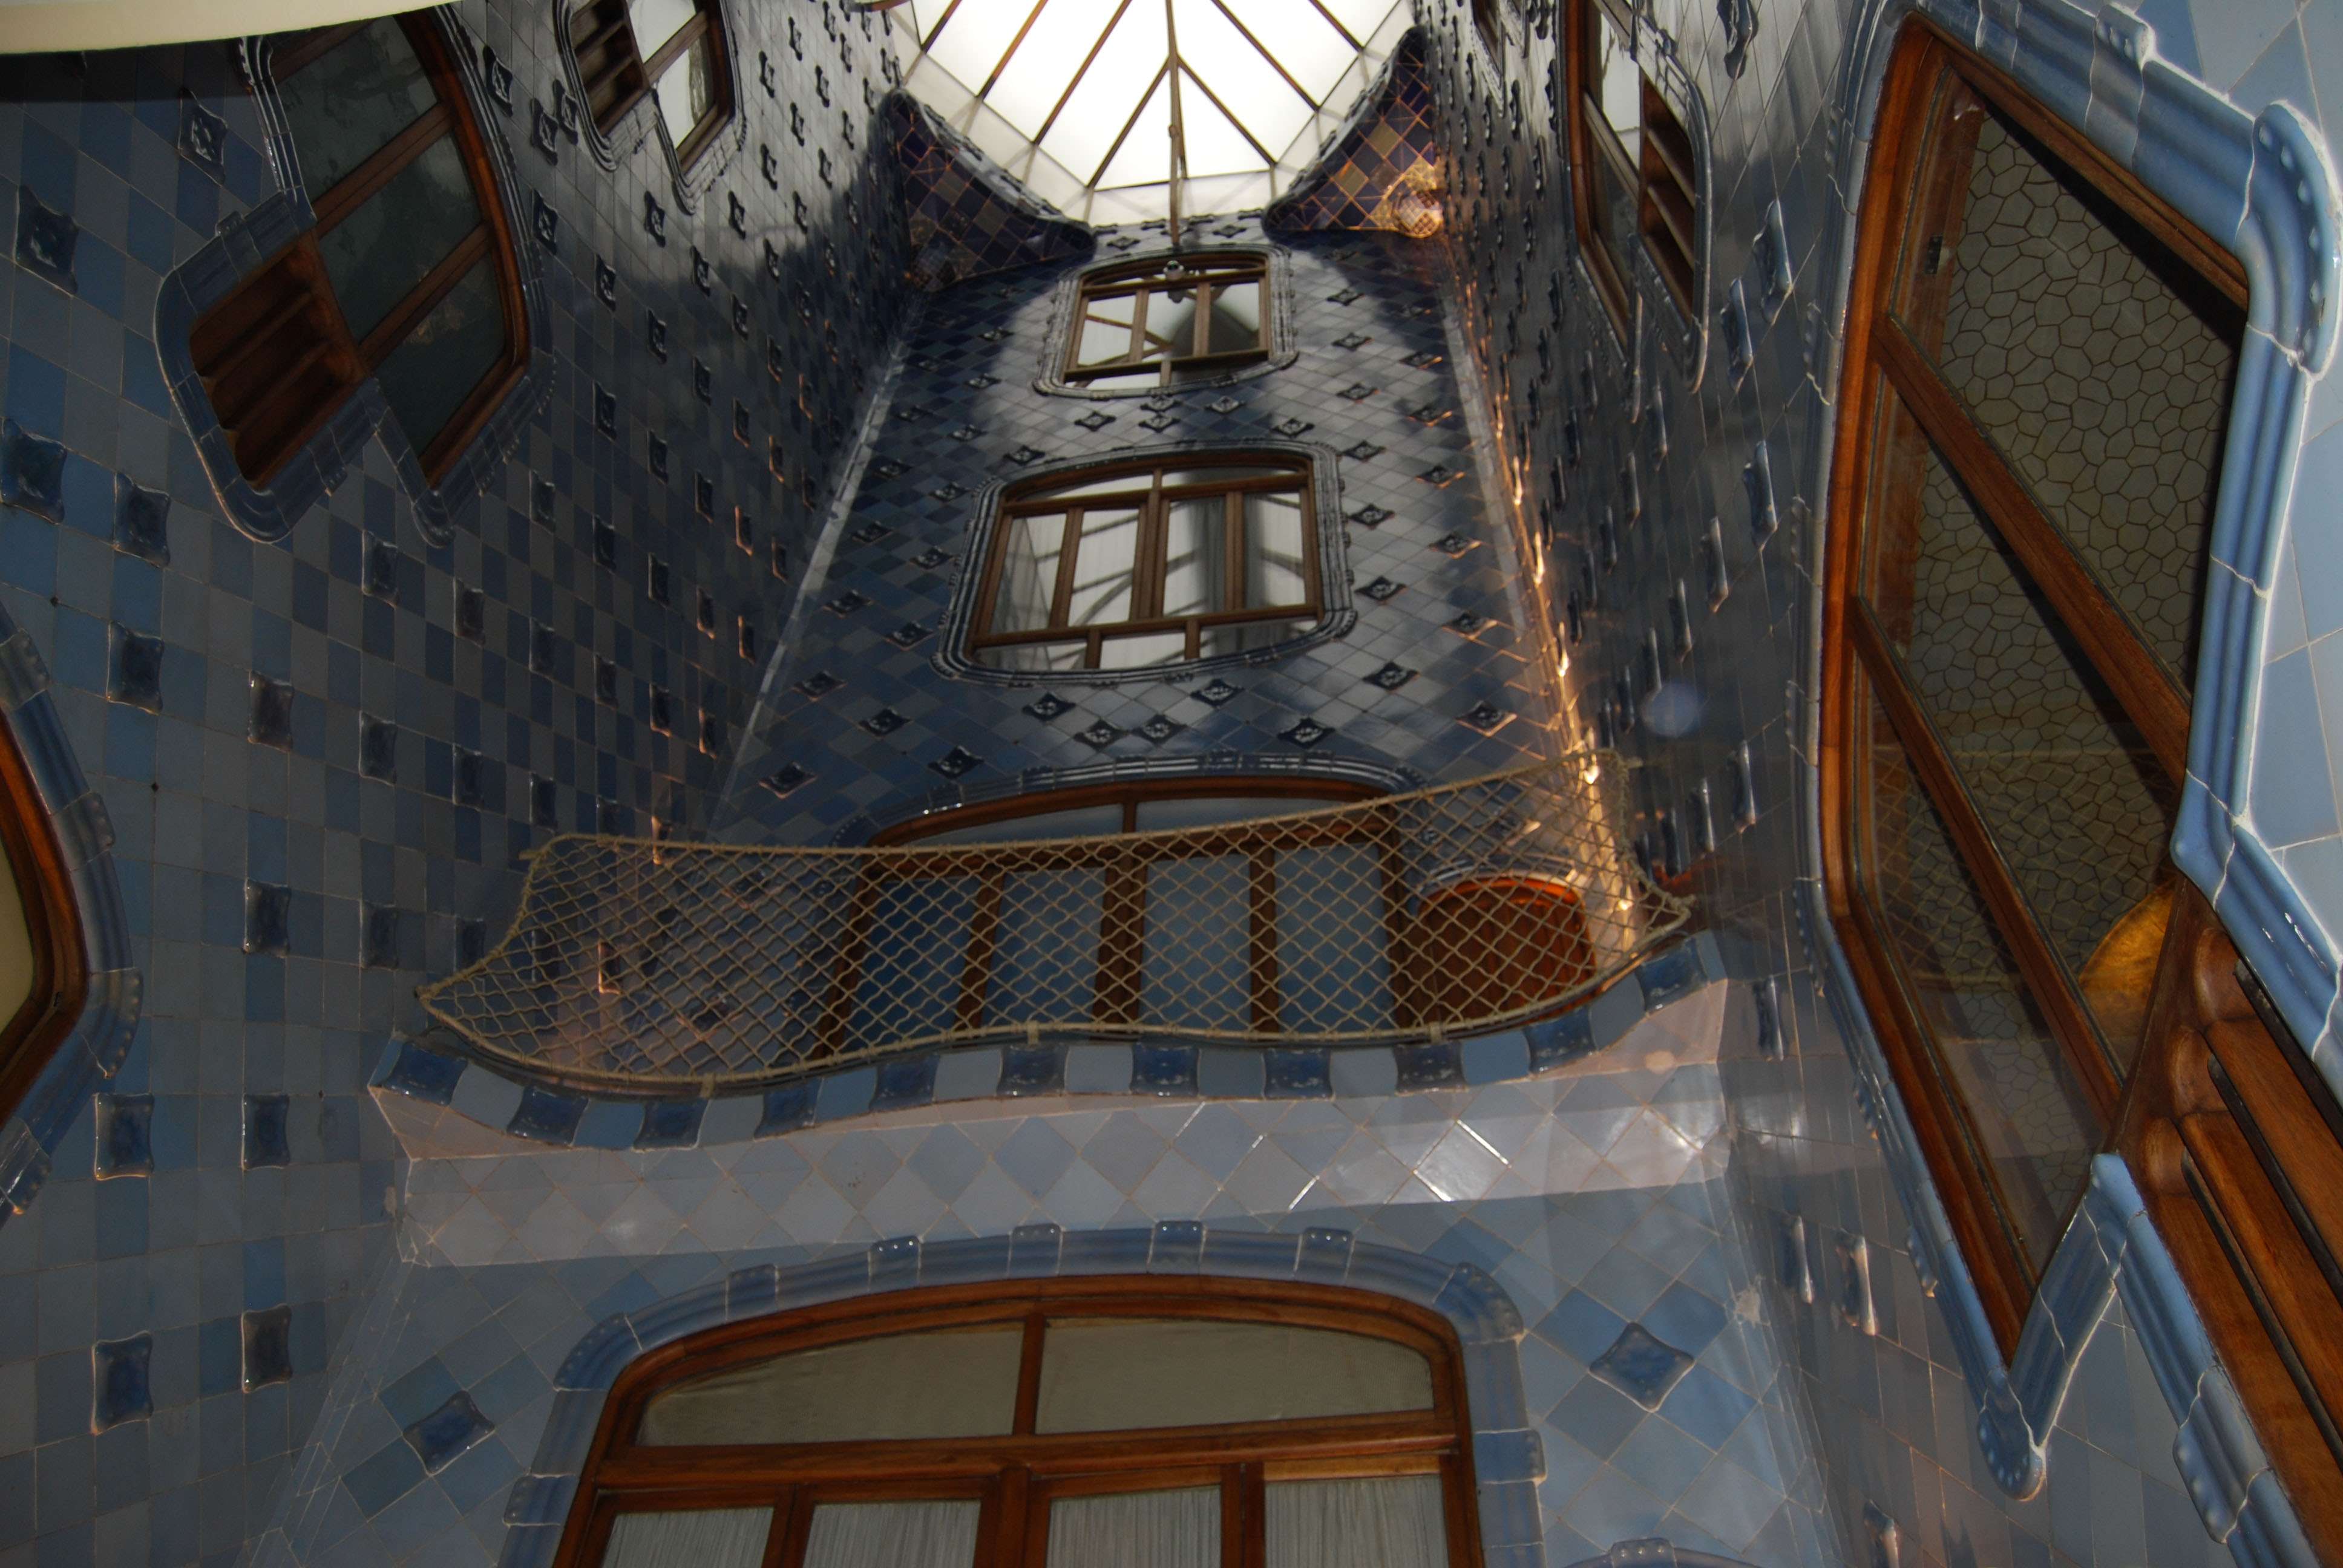 Barcelona y Gaudí, un genio de la arquitectura - Crucero Brisas del Mediterraneo (6)